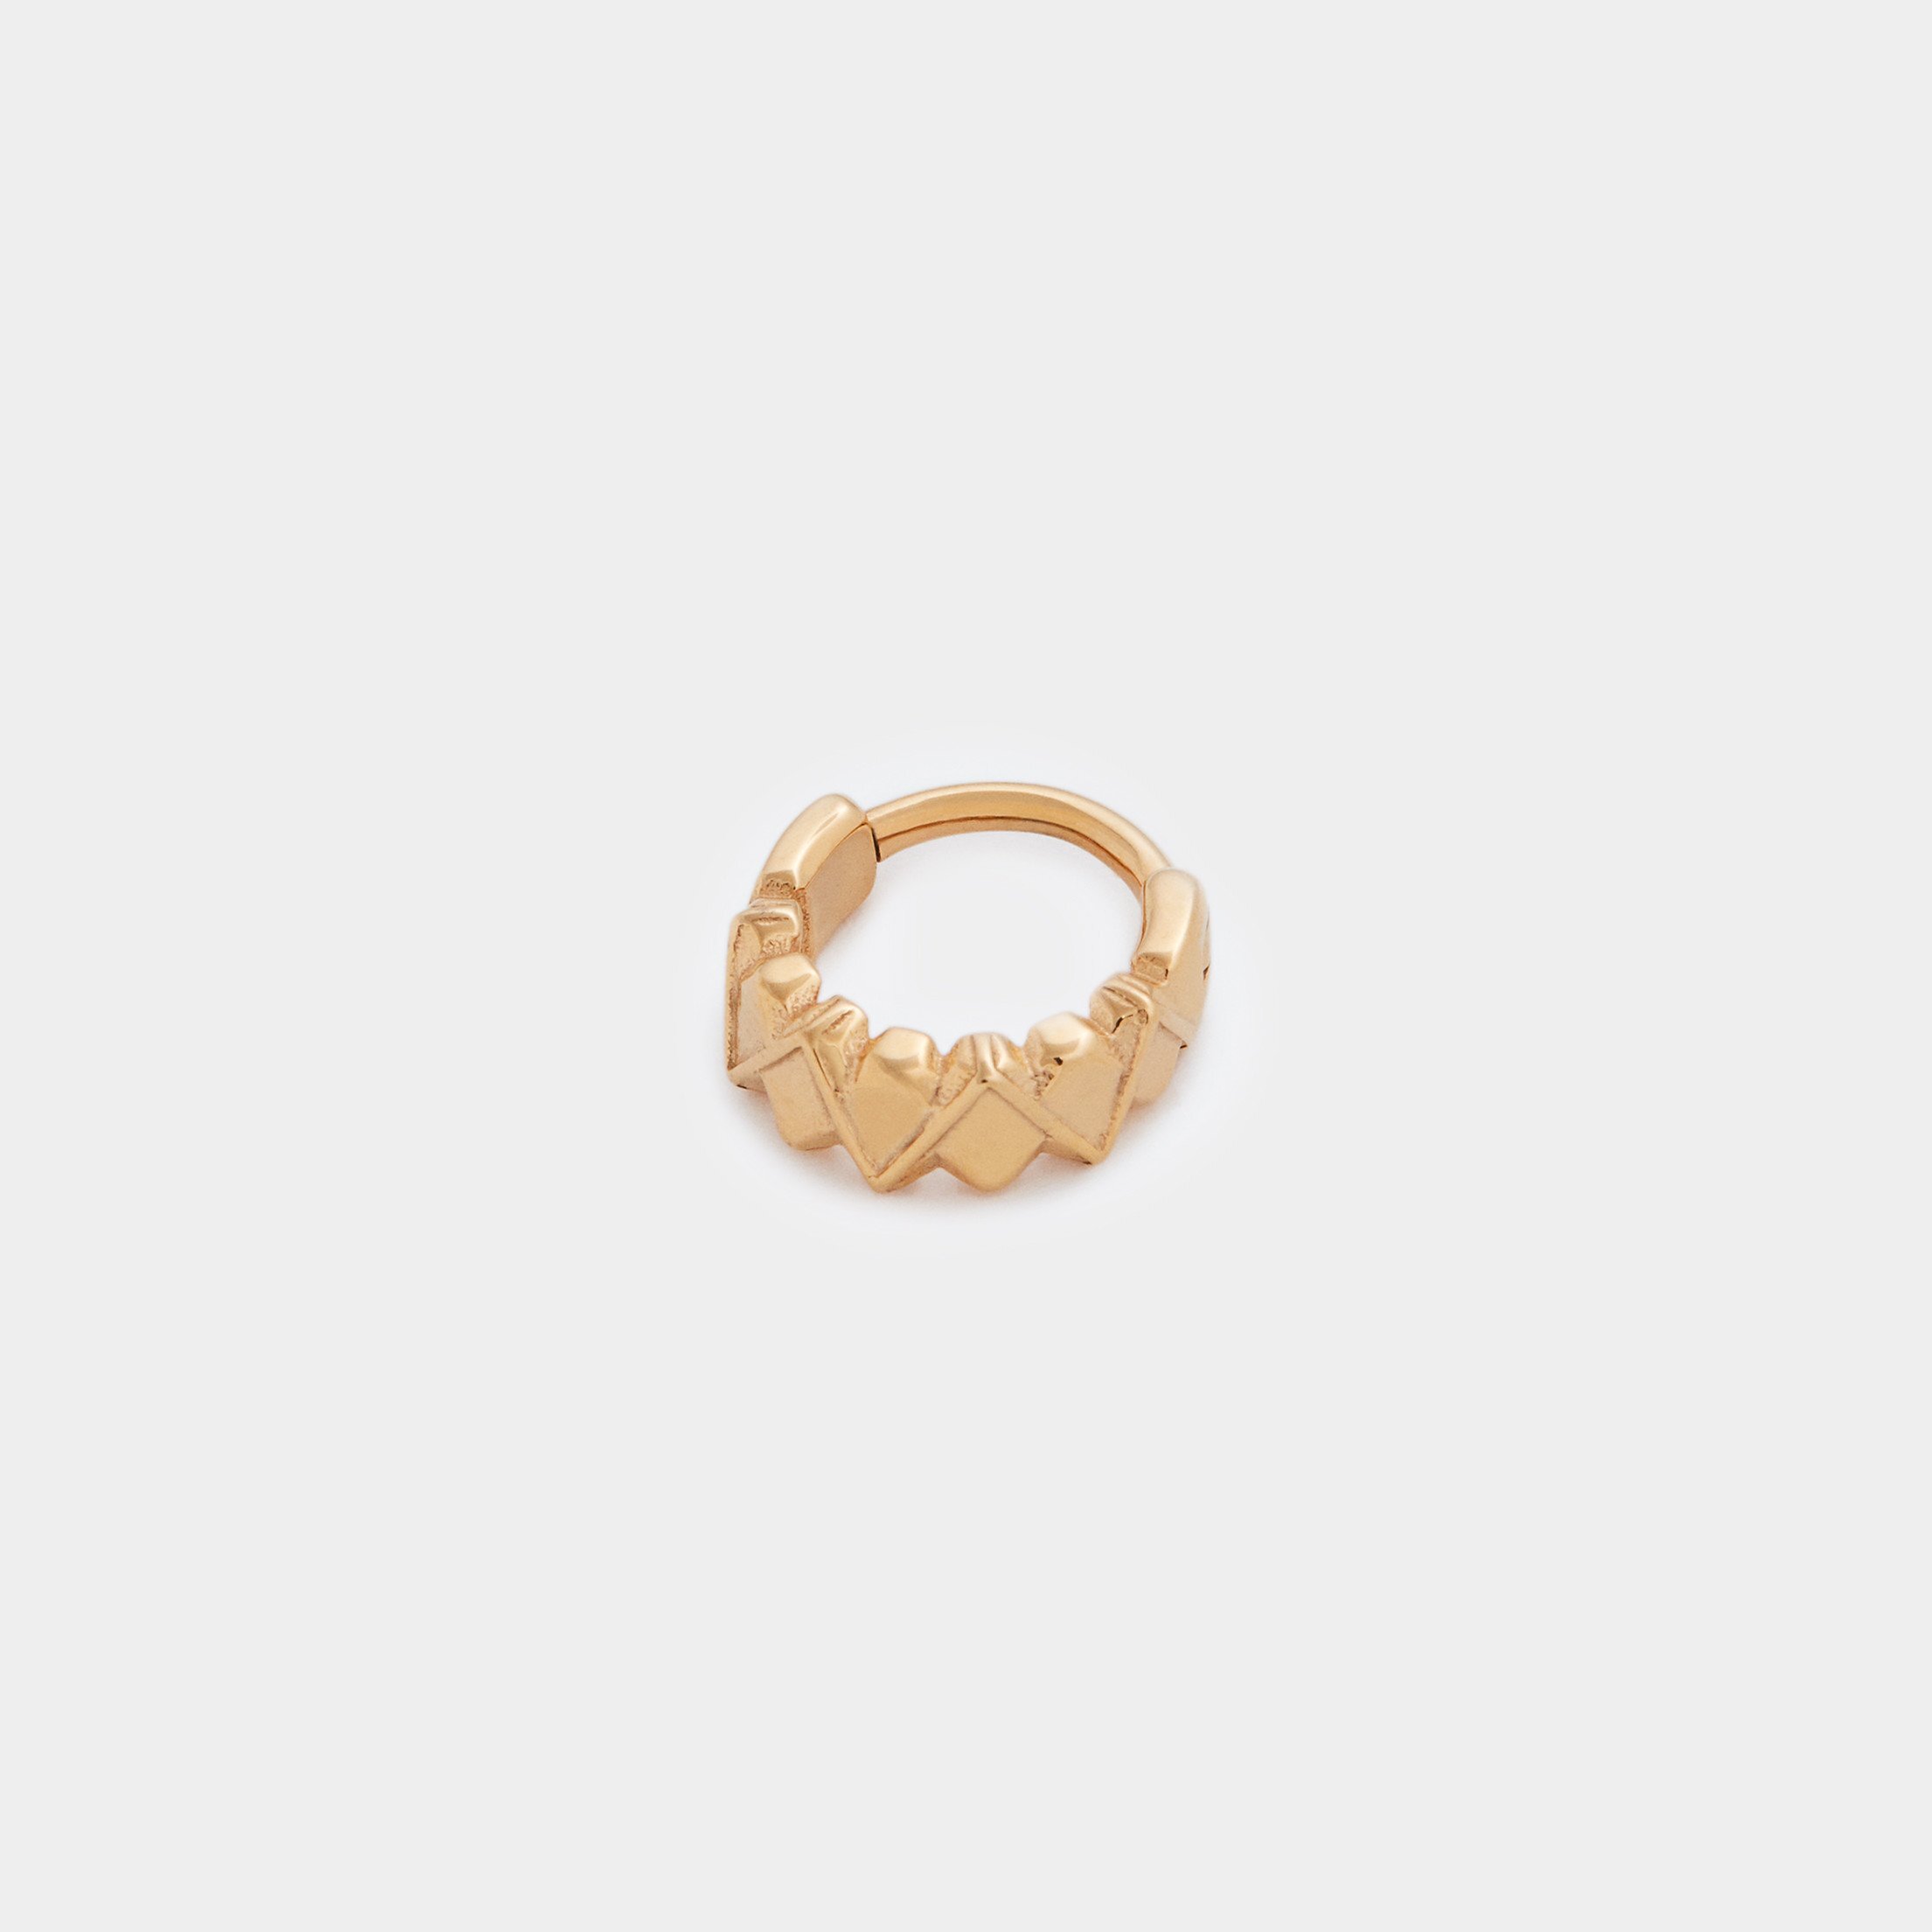 Body Gems - 14k Clicker Ring with 6 Gems — SUBA Piercing & Fine Jewelry